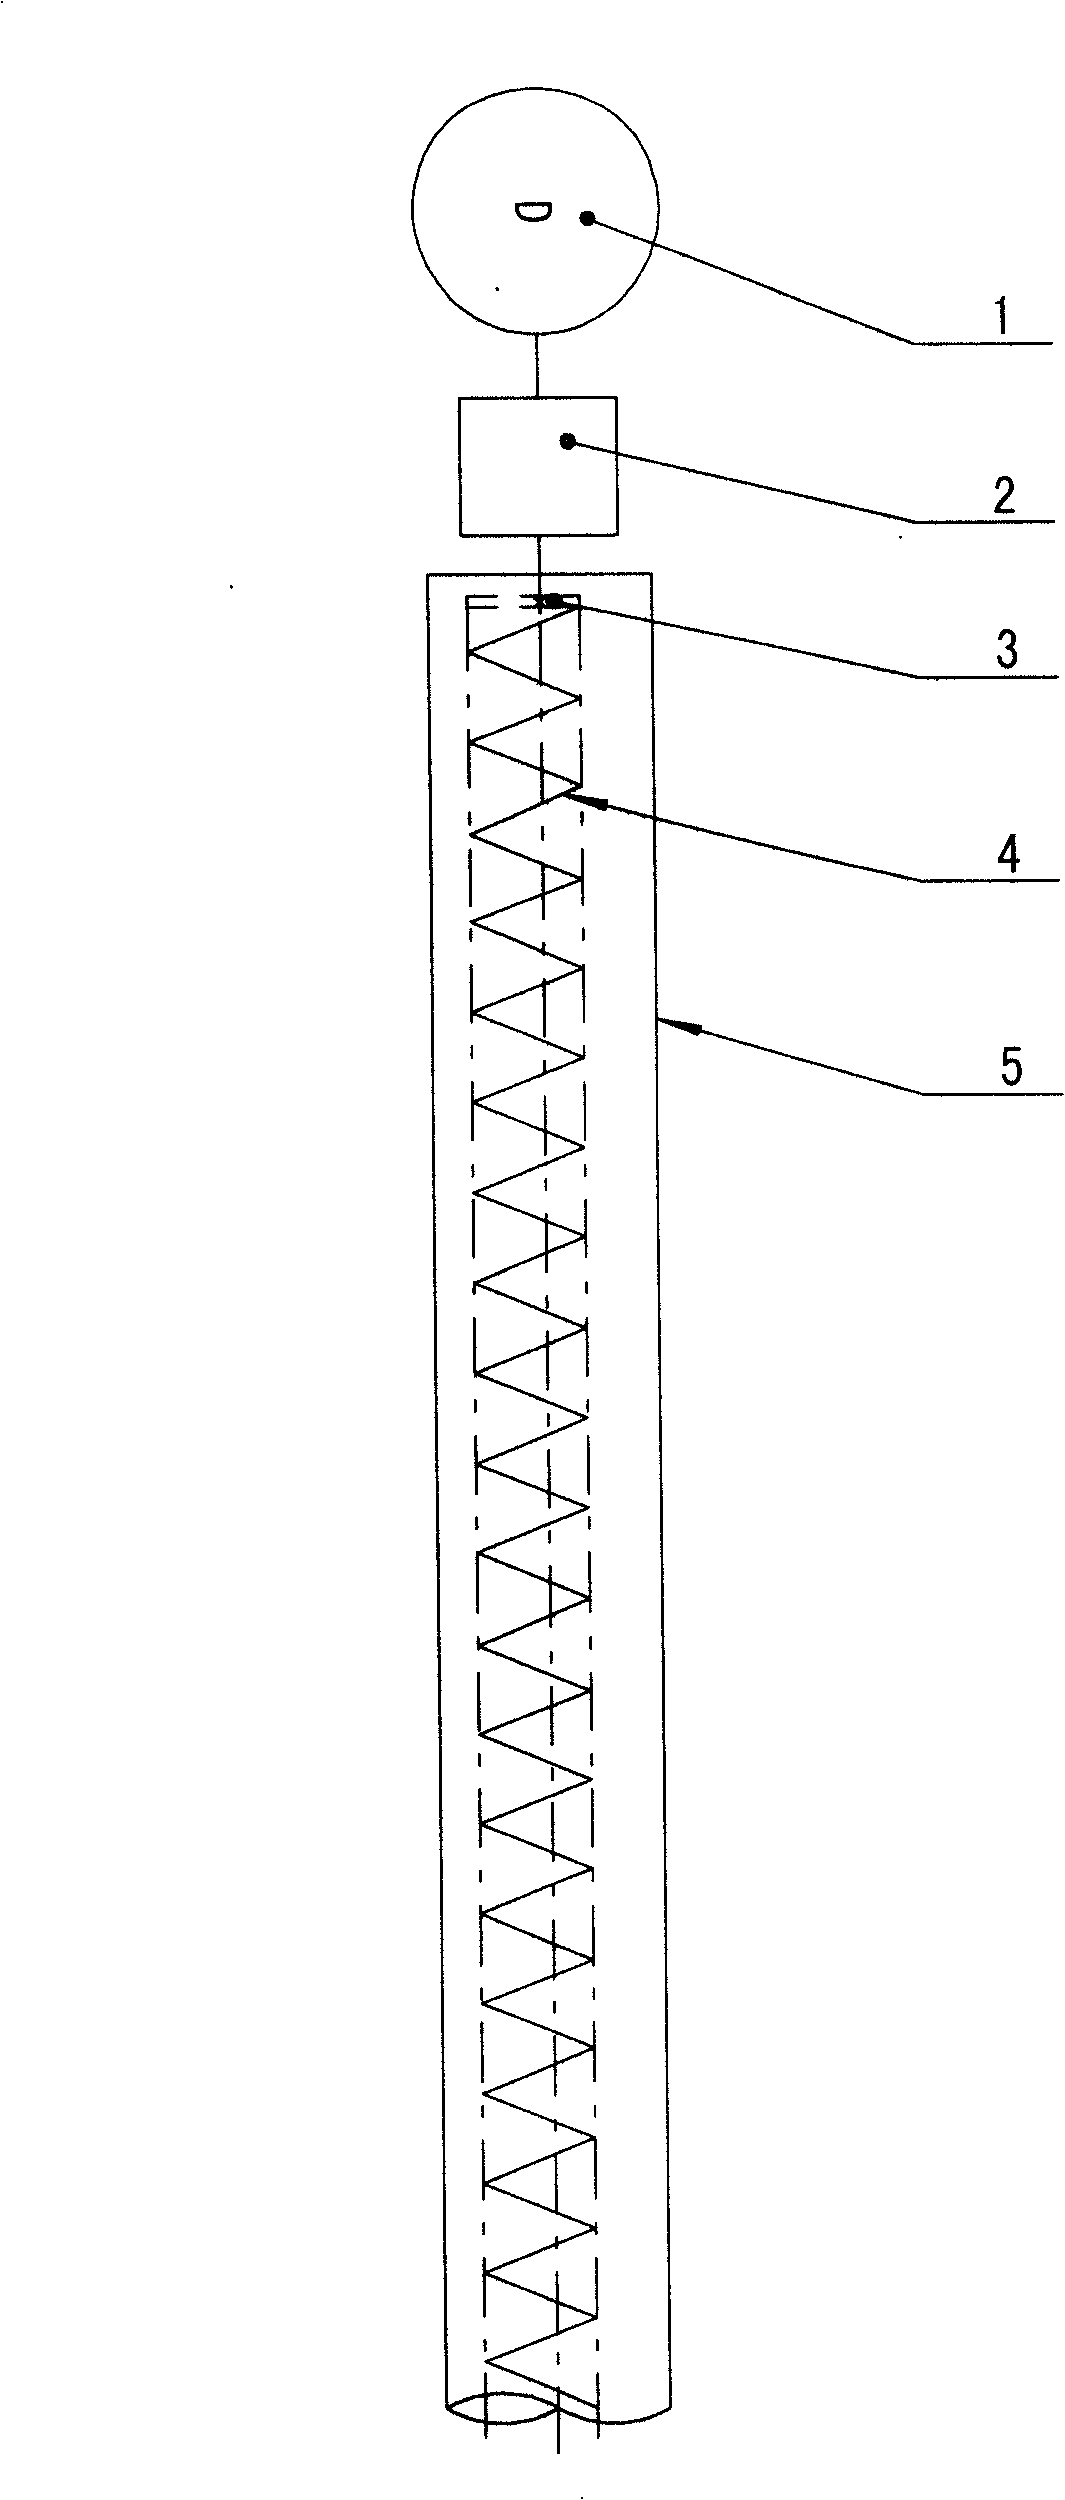 Non-shaft conveyor